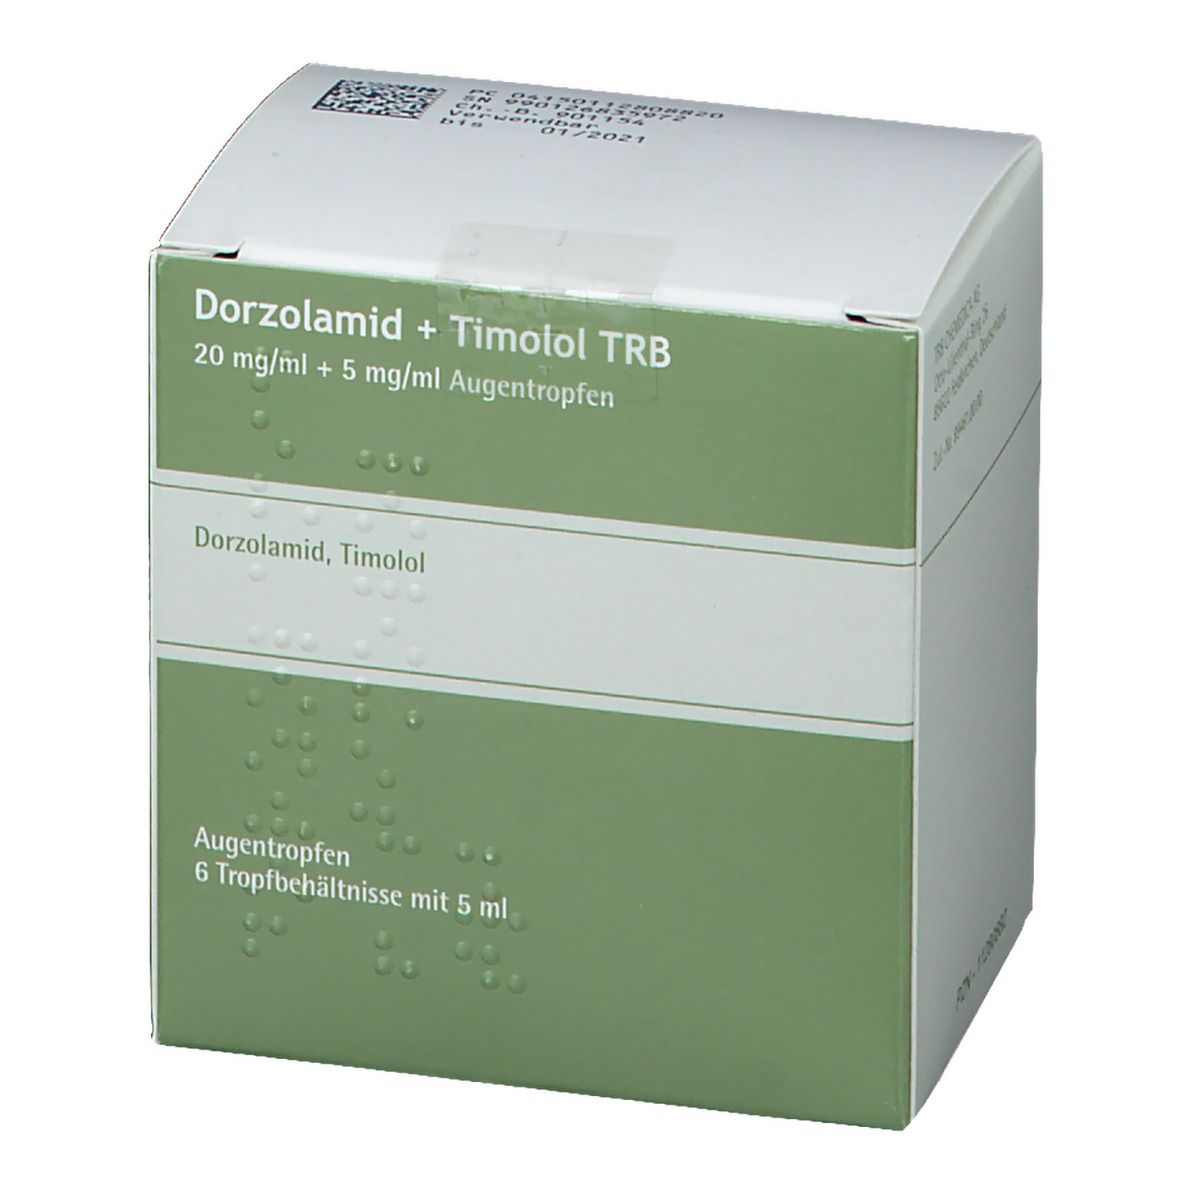 Dorzolamid + Timolol TRB 20 mg/ml + 5 mg/ml